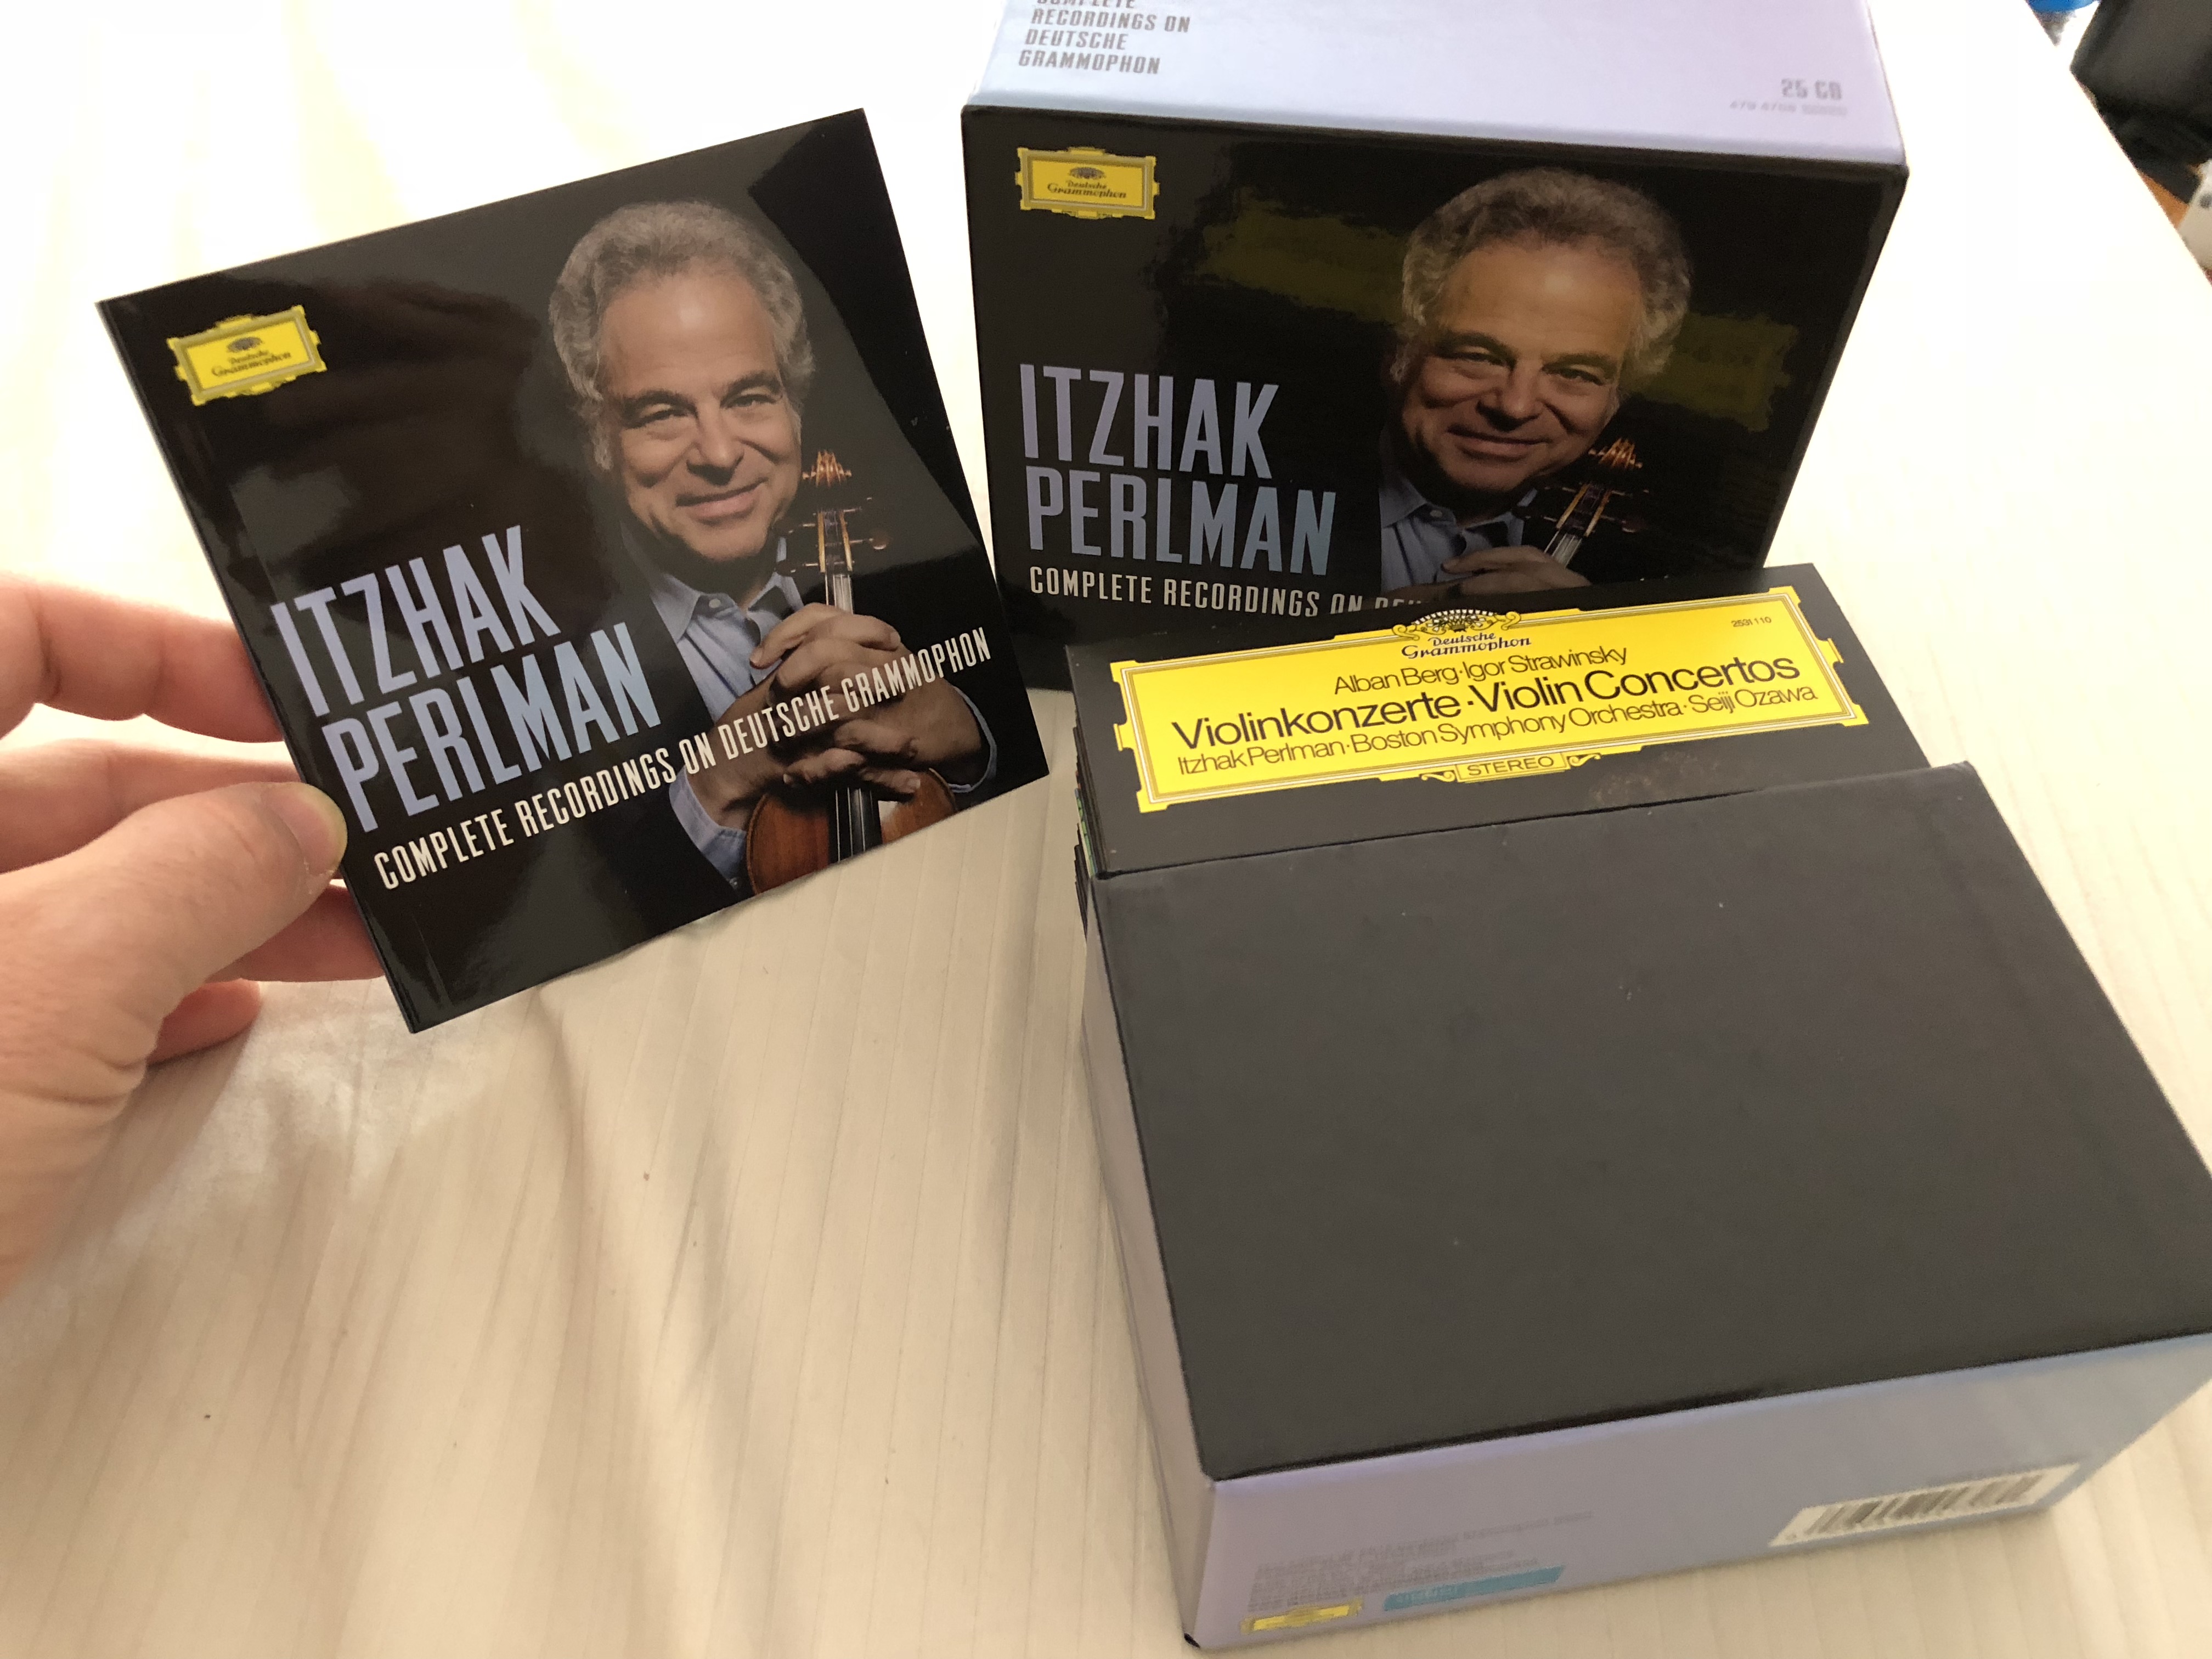 Itzhak Perlman: Complete Recordings on Deutsche Grammophon